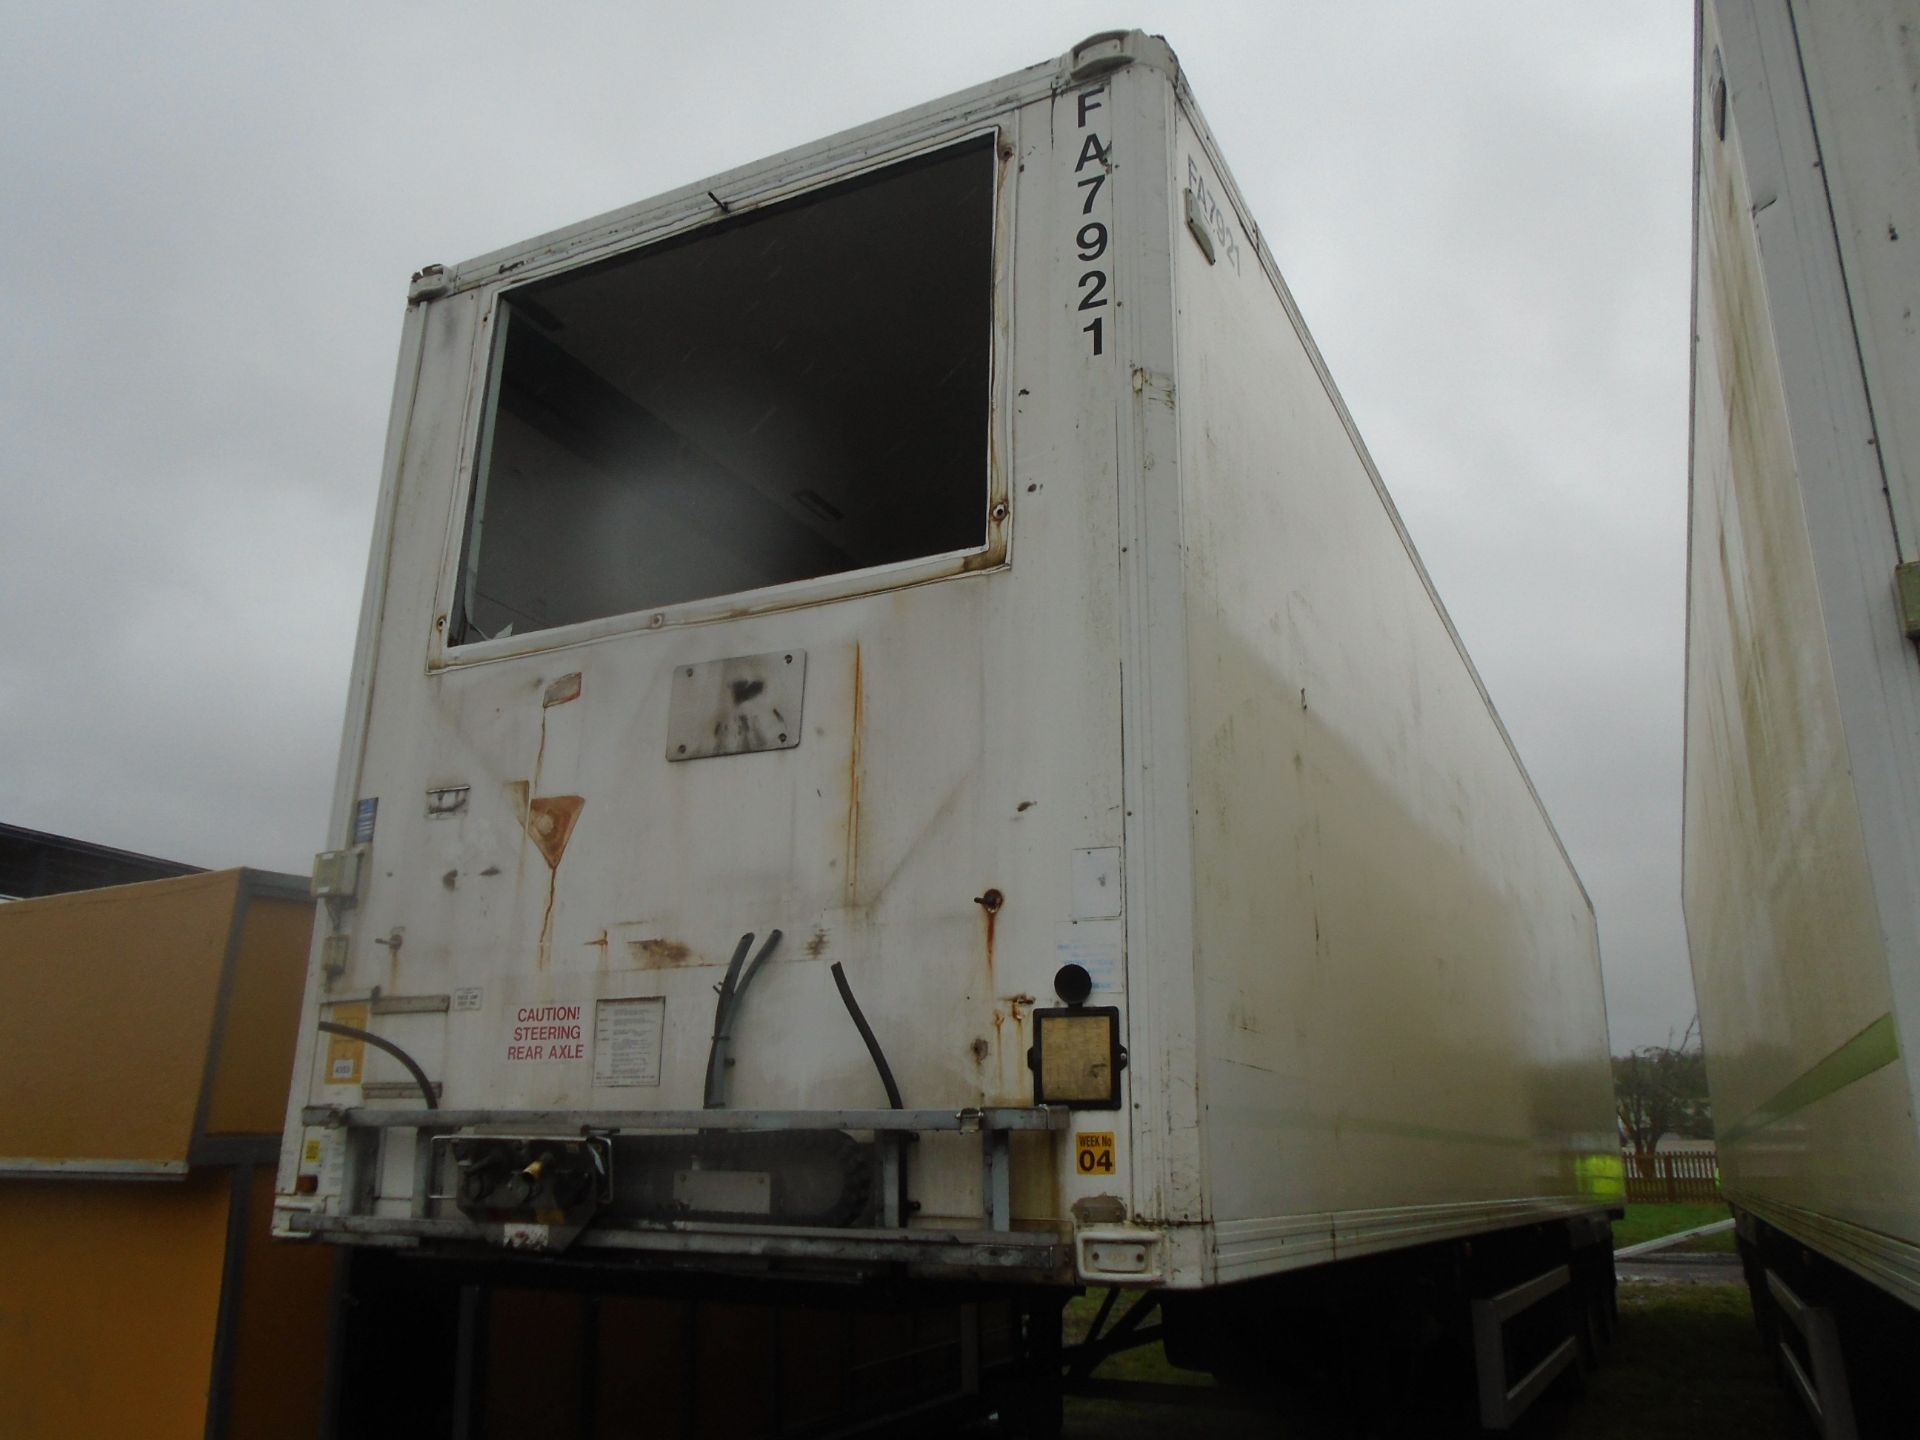 45ft fridge box trailer less fridge unit